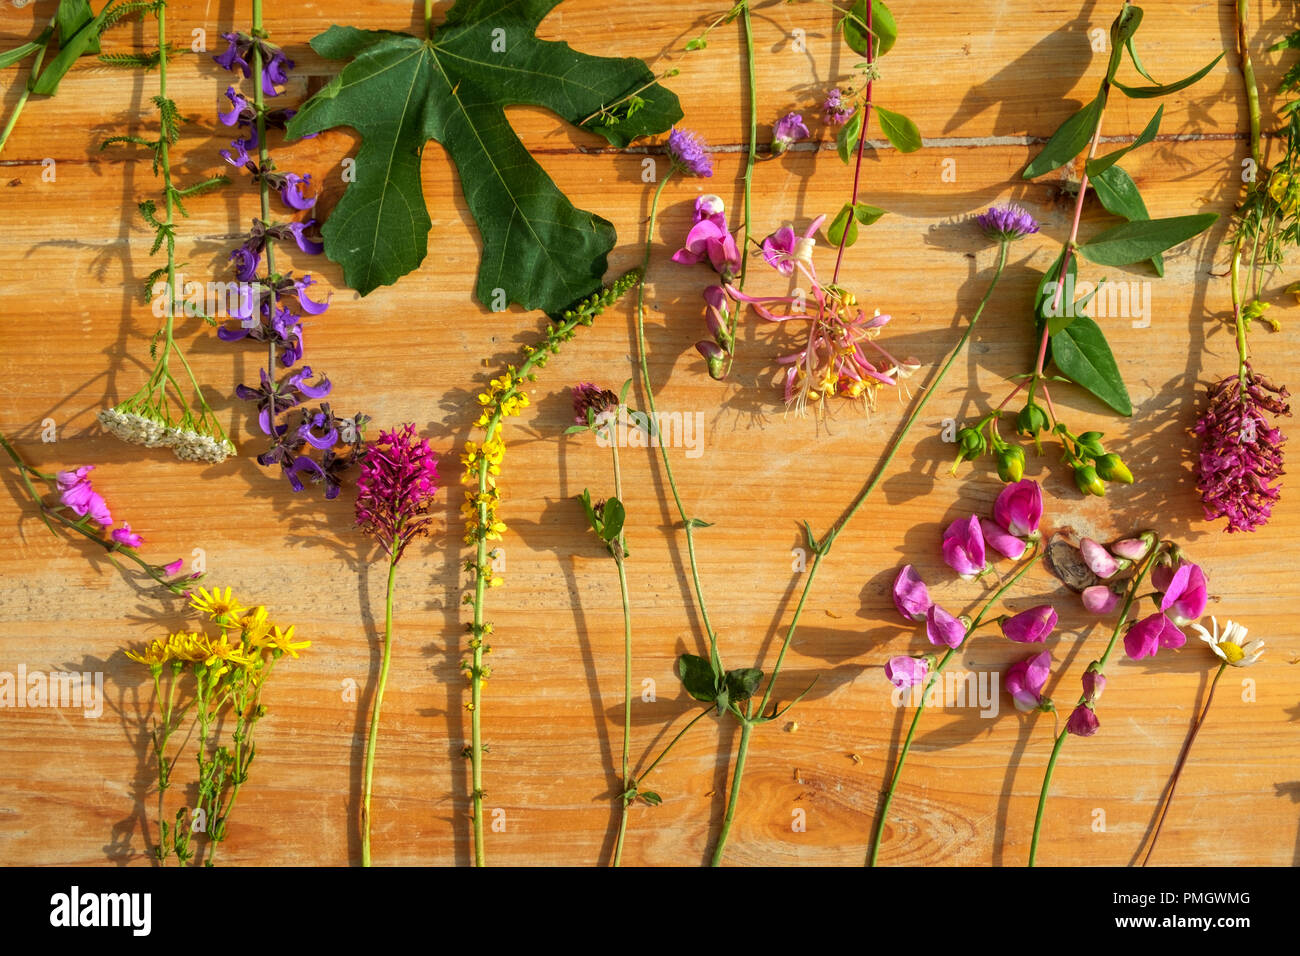 Au début de l'été et le bord de champ bocage fleurs sauvages dans un arrangement de mise à plat sur une table en bois. Banque D'Images